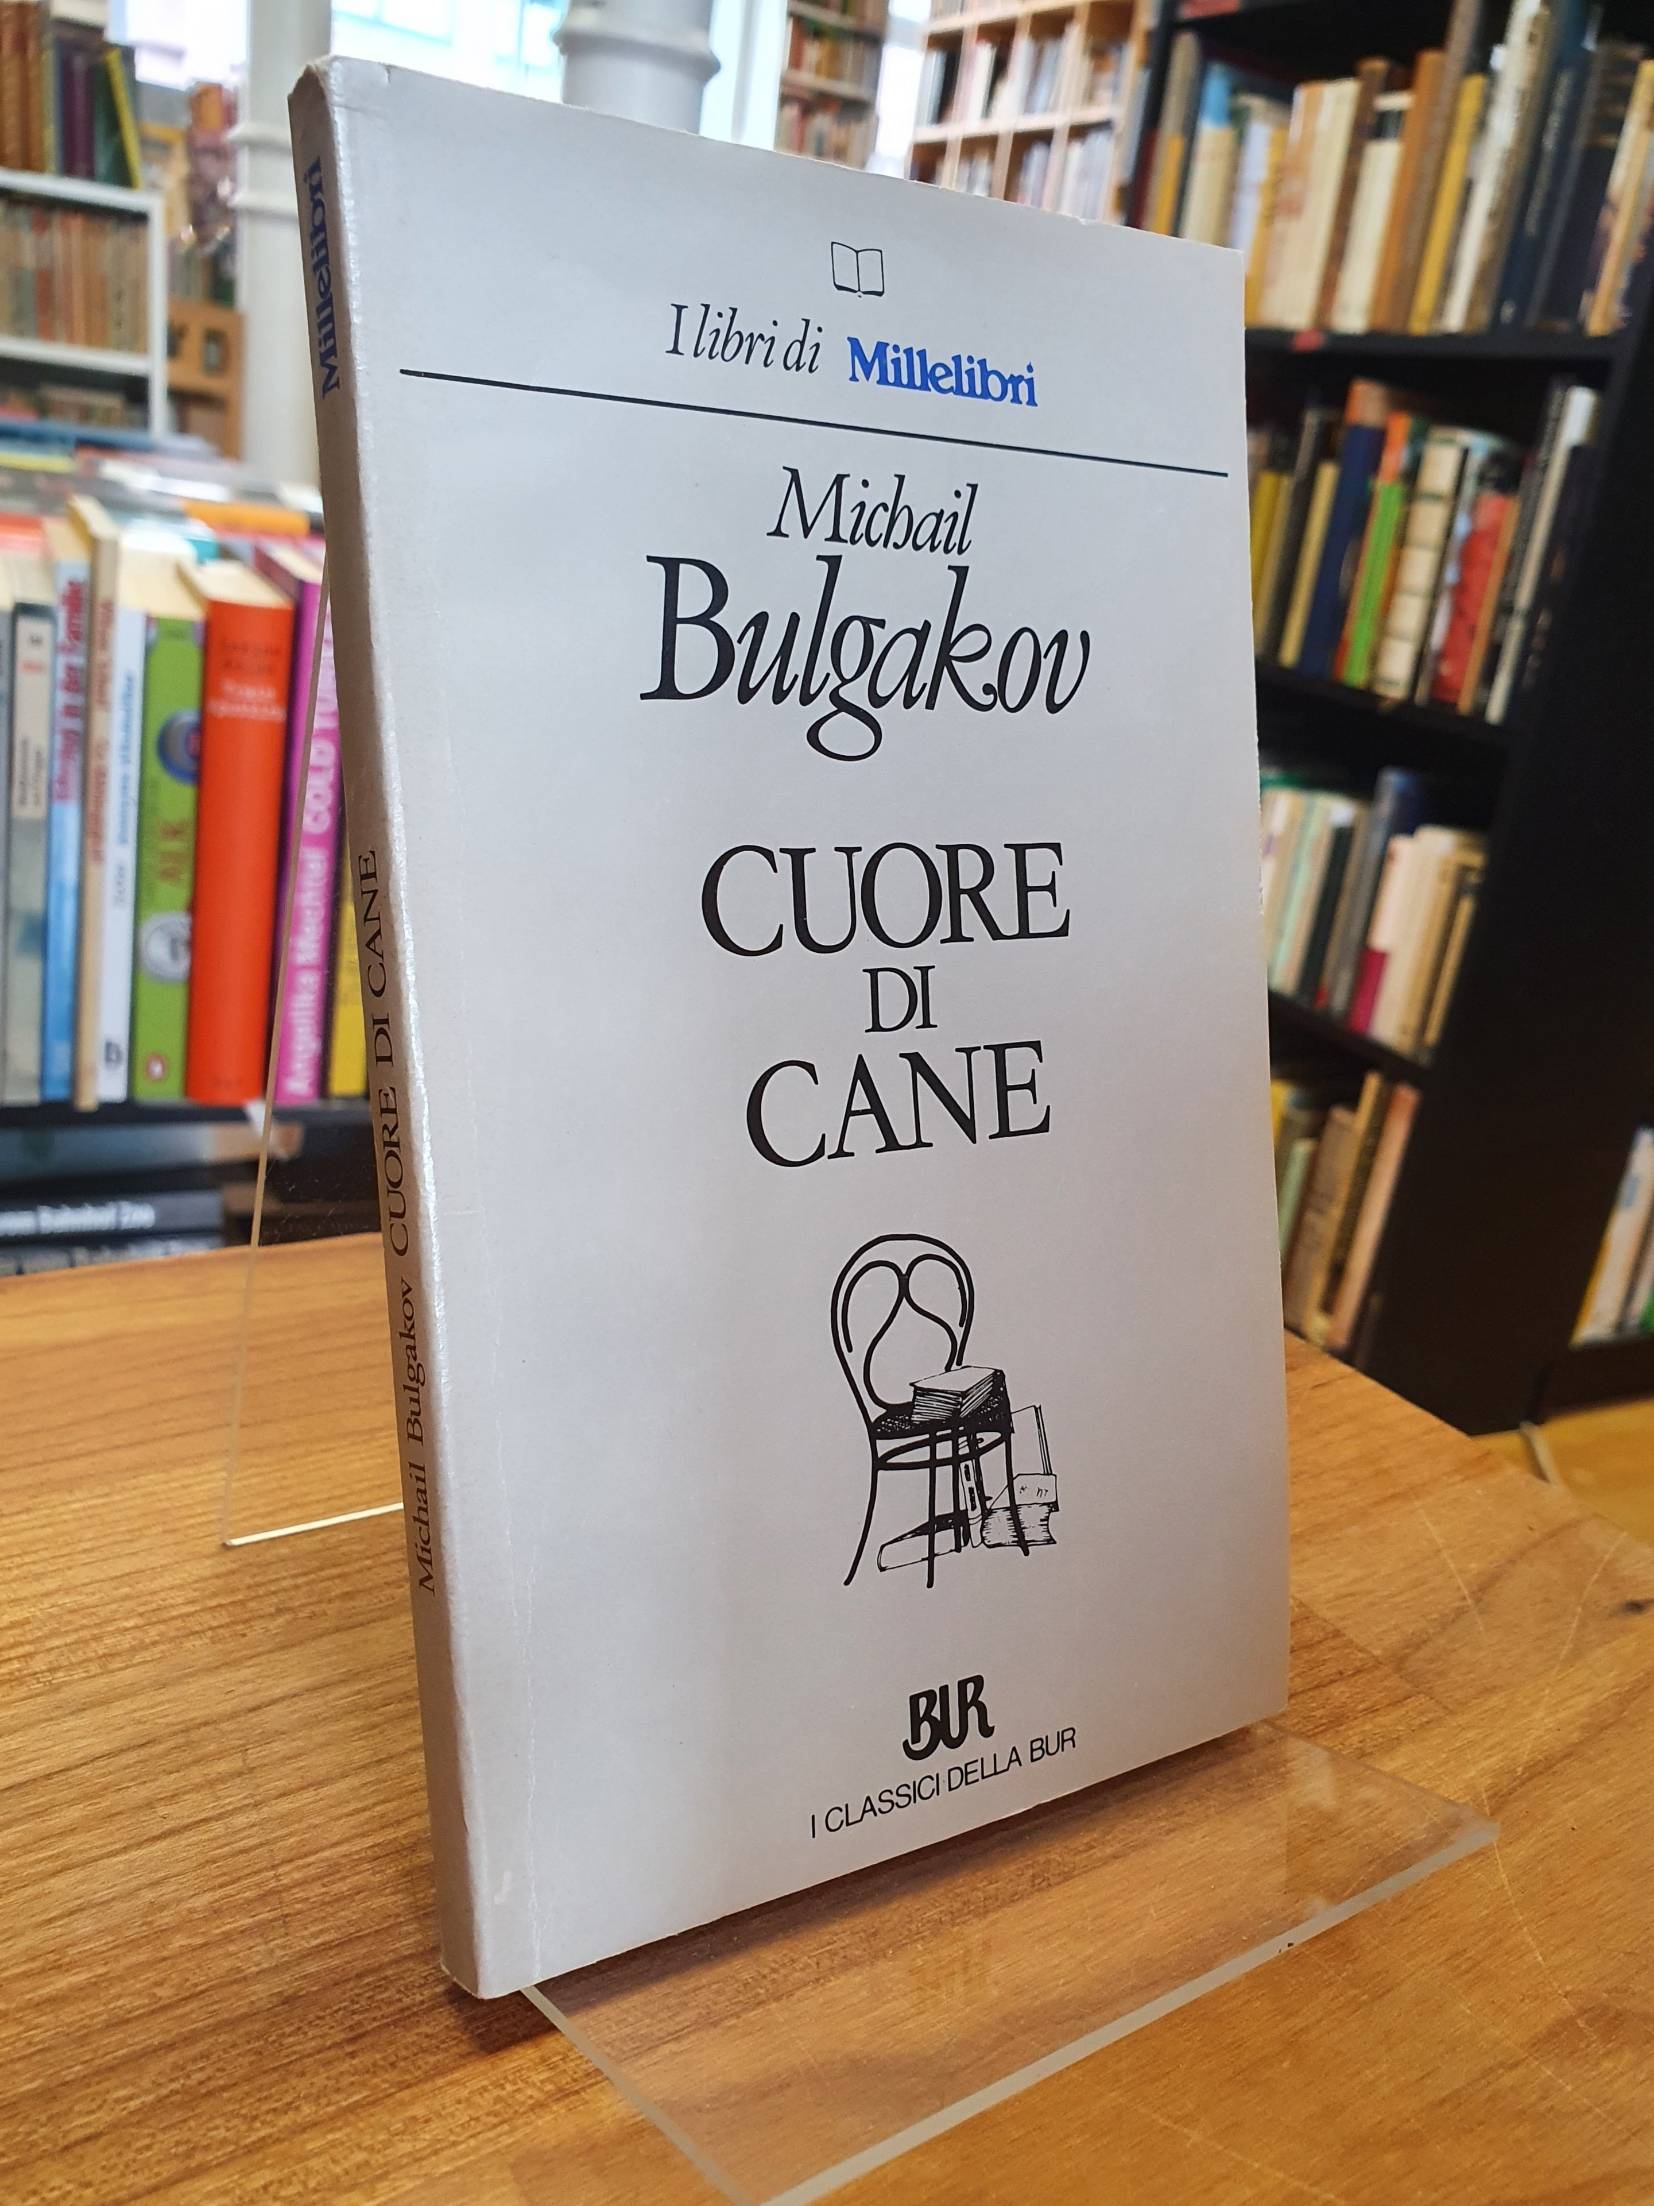 Bulgakow, Cuore di Cane,